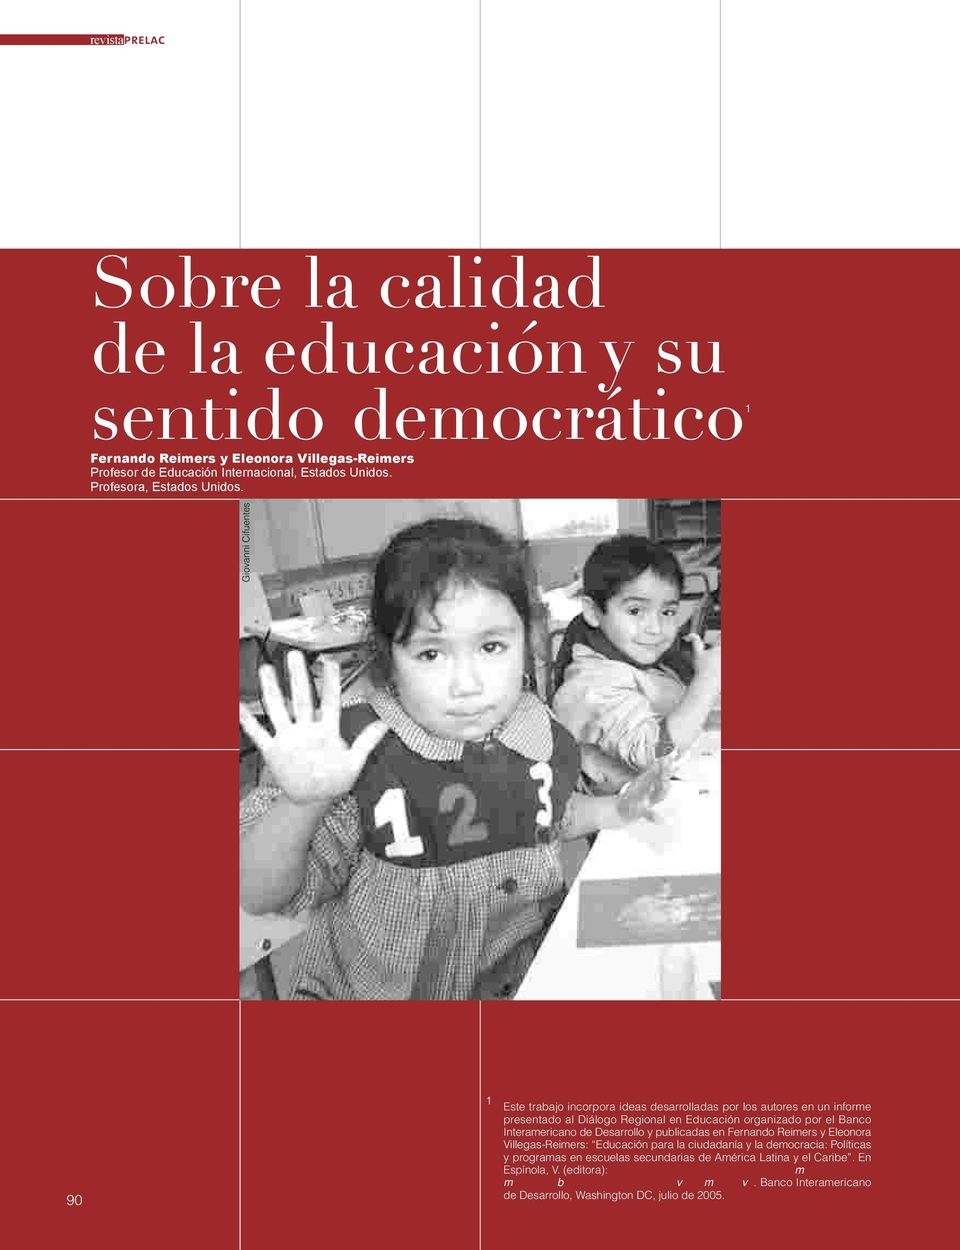 Giovanni Cifuentes 90 1 Este trabajo incorpora ideas desarrolladas por los autores en un informe presentado al Diálogo Regional en Educación organizado por el Banco Interamericano de